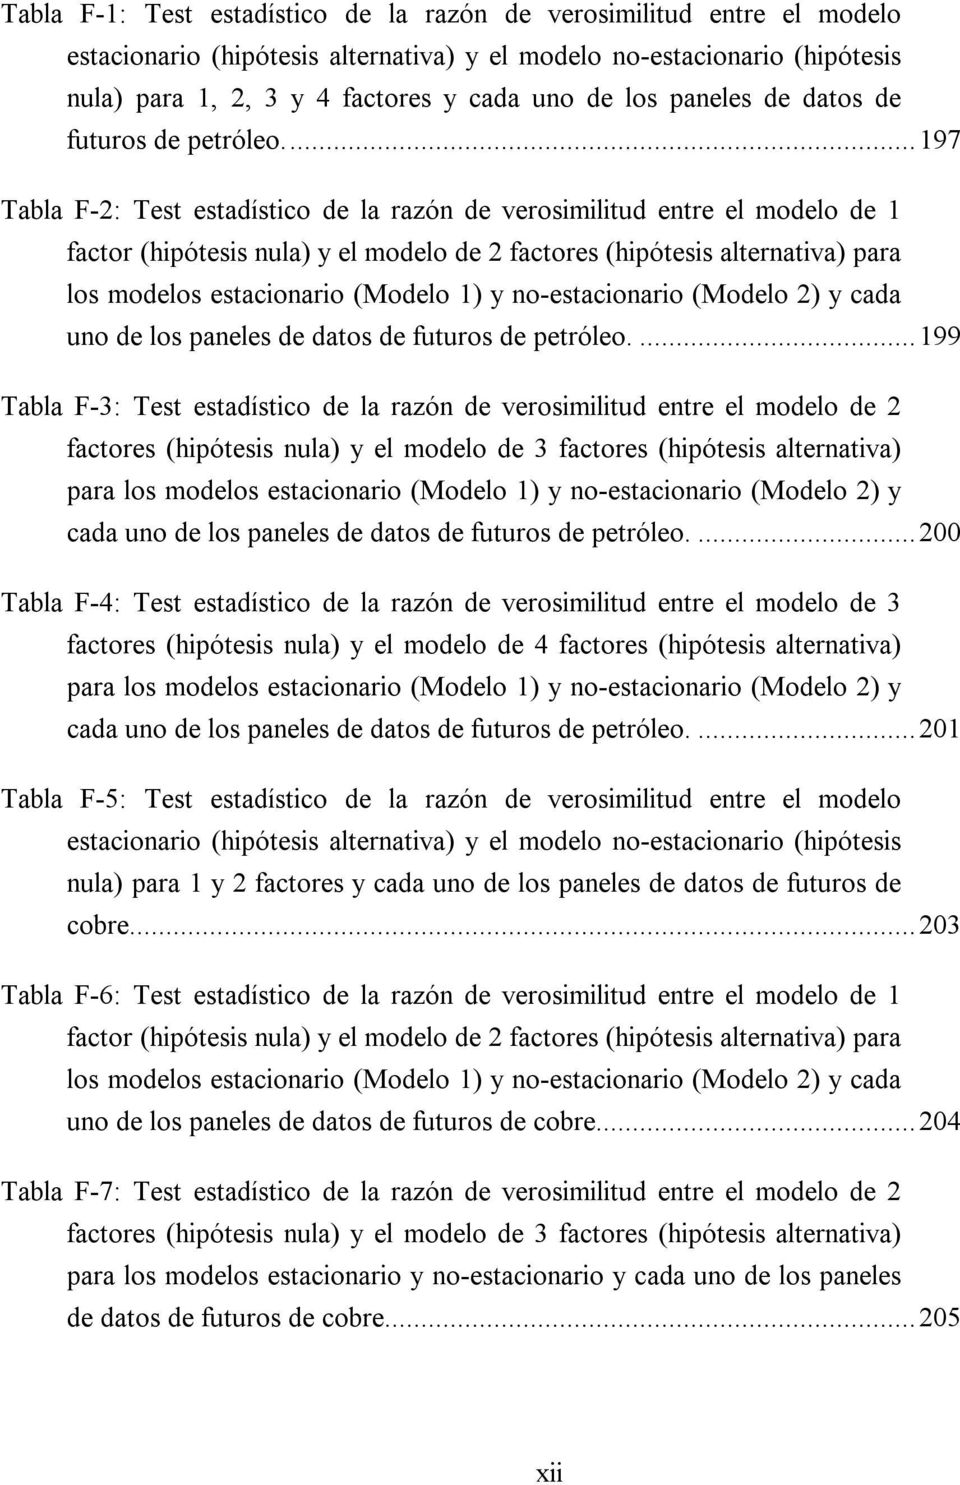 ..197 Tabla F-2: Tes esadísico de la razón de verosimiliud enre el modelo de 1 facor (hipóesis nula) y el modelo de 2 facores (hipóesis alernaiva) para los modelos esacionario (Modelo 1) y